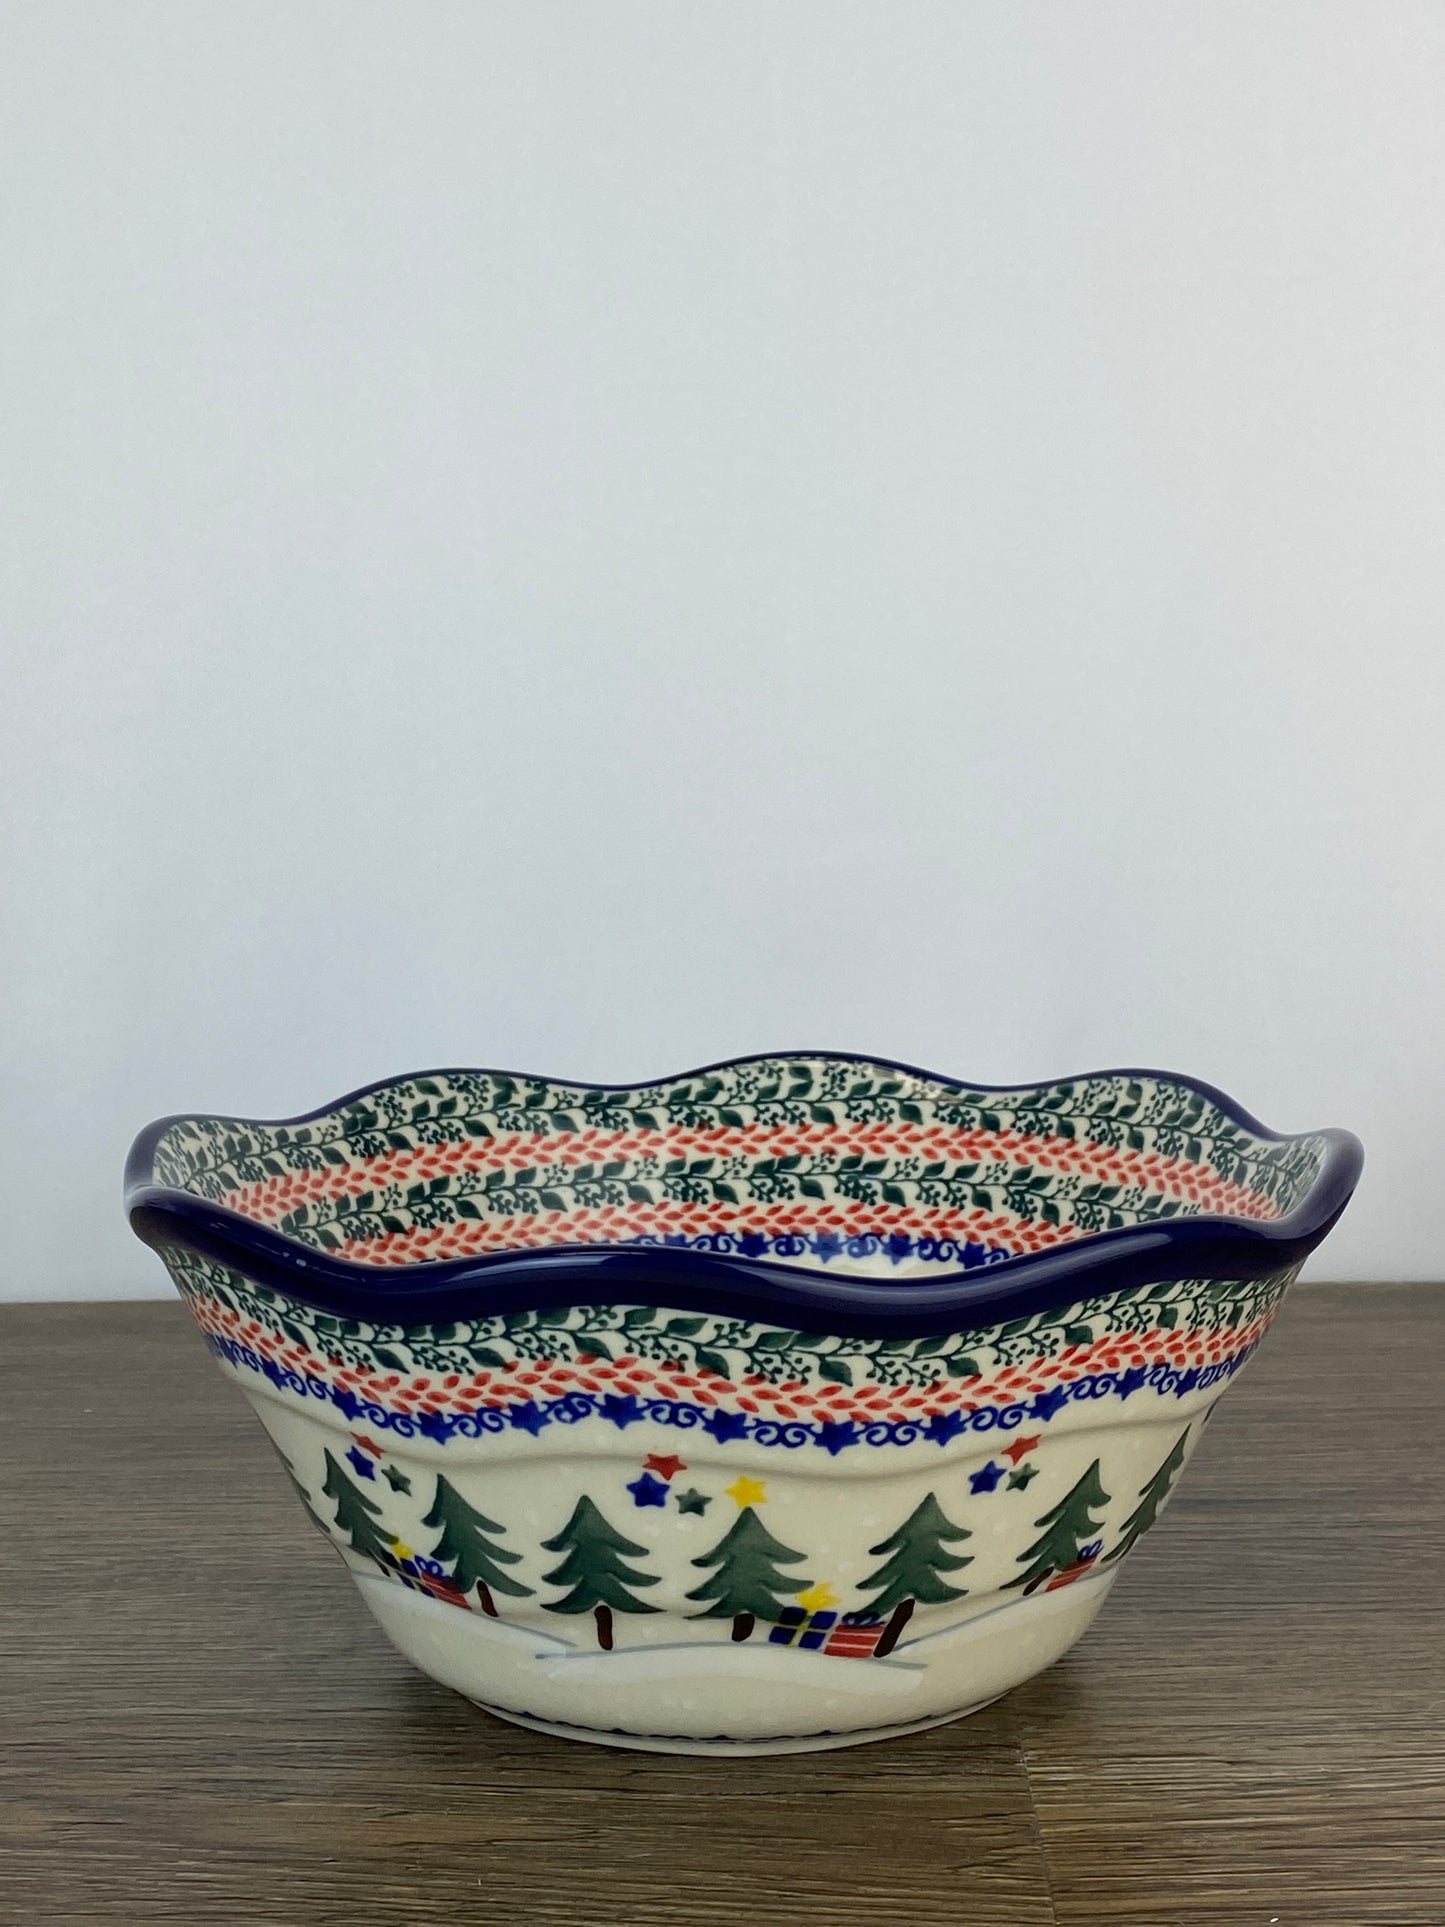 SALE Small Wavy Unikat Bowl - Shape 691 - Pattern U5001